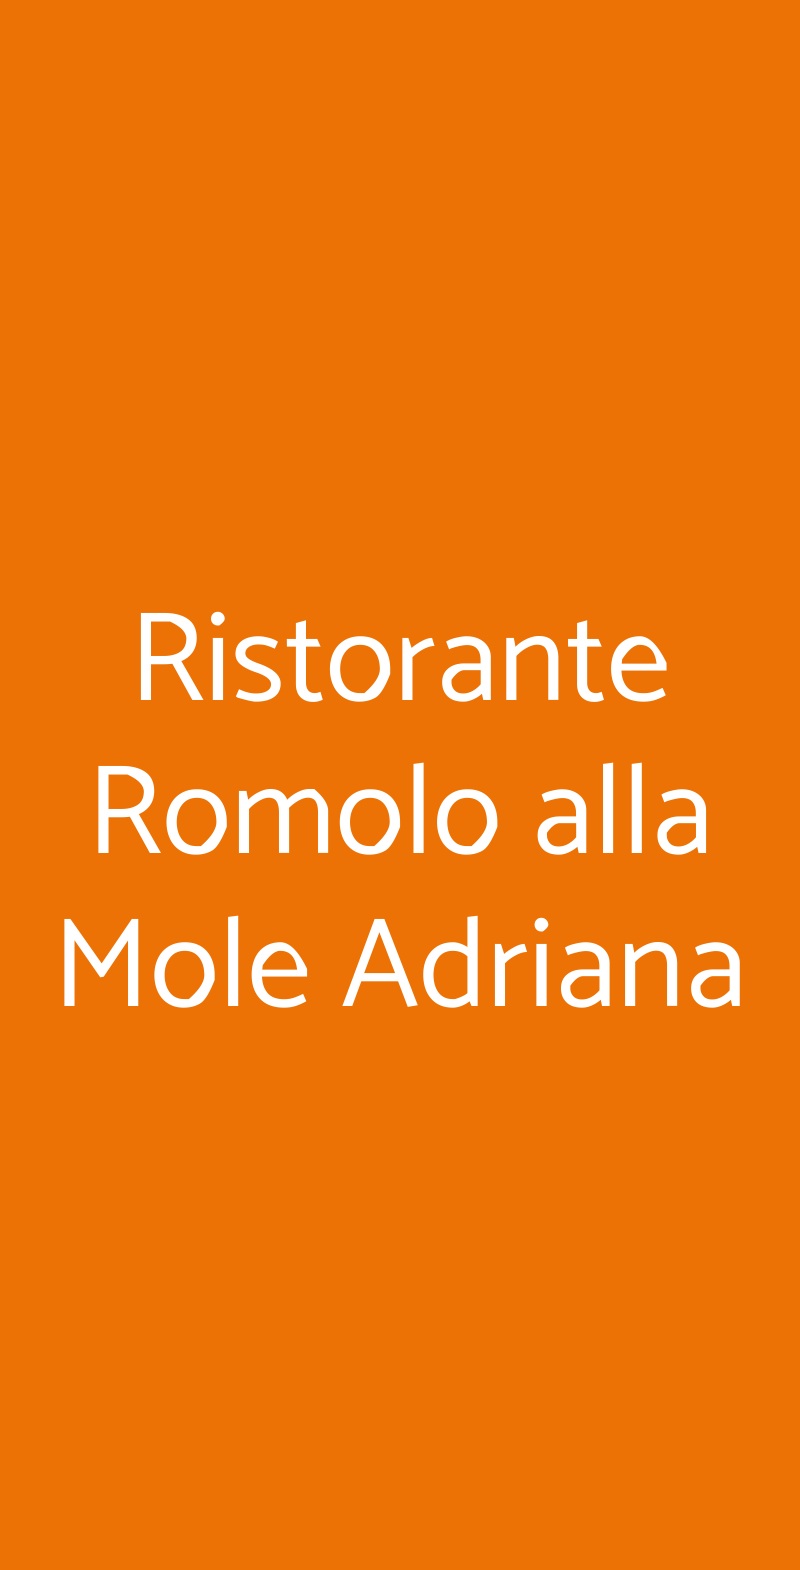 Ristorante Romolo alla Mole Adriana Roma menù 1 pagina